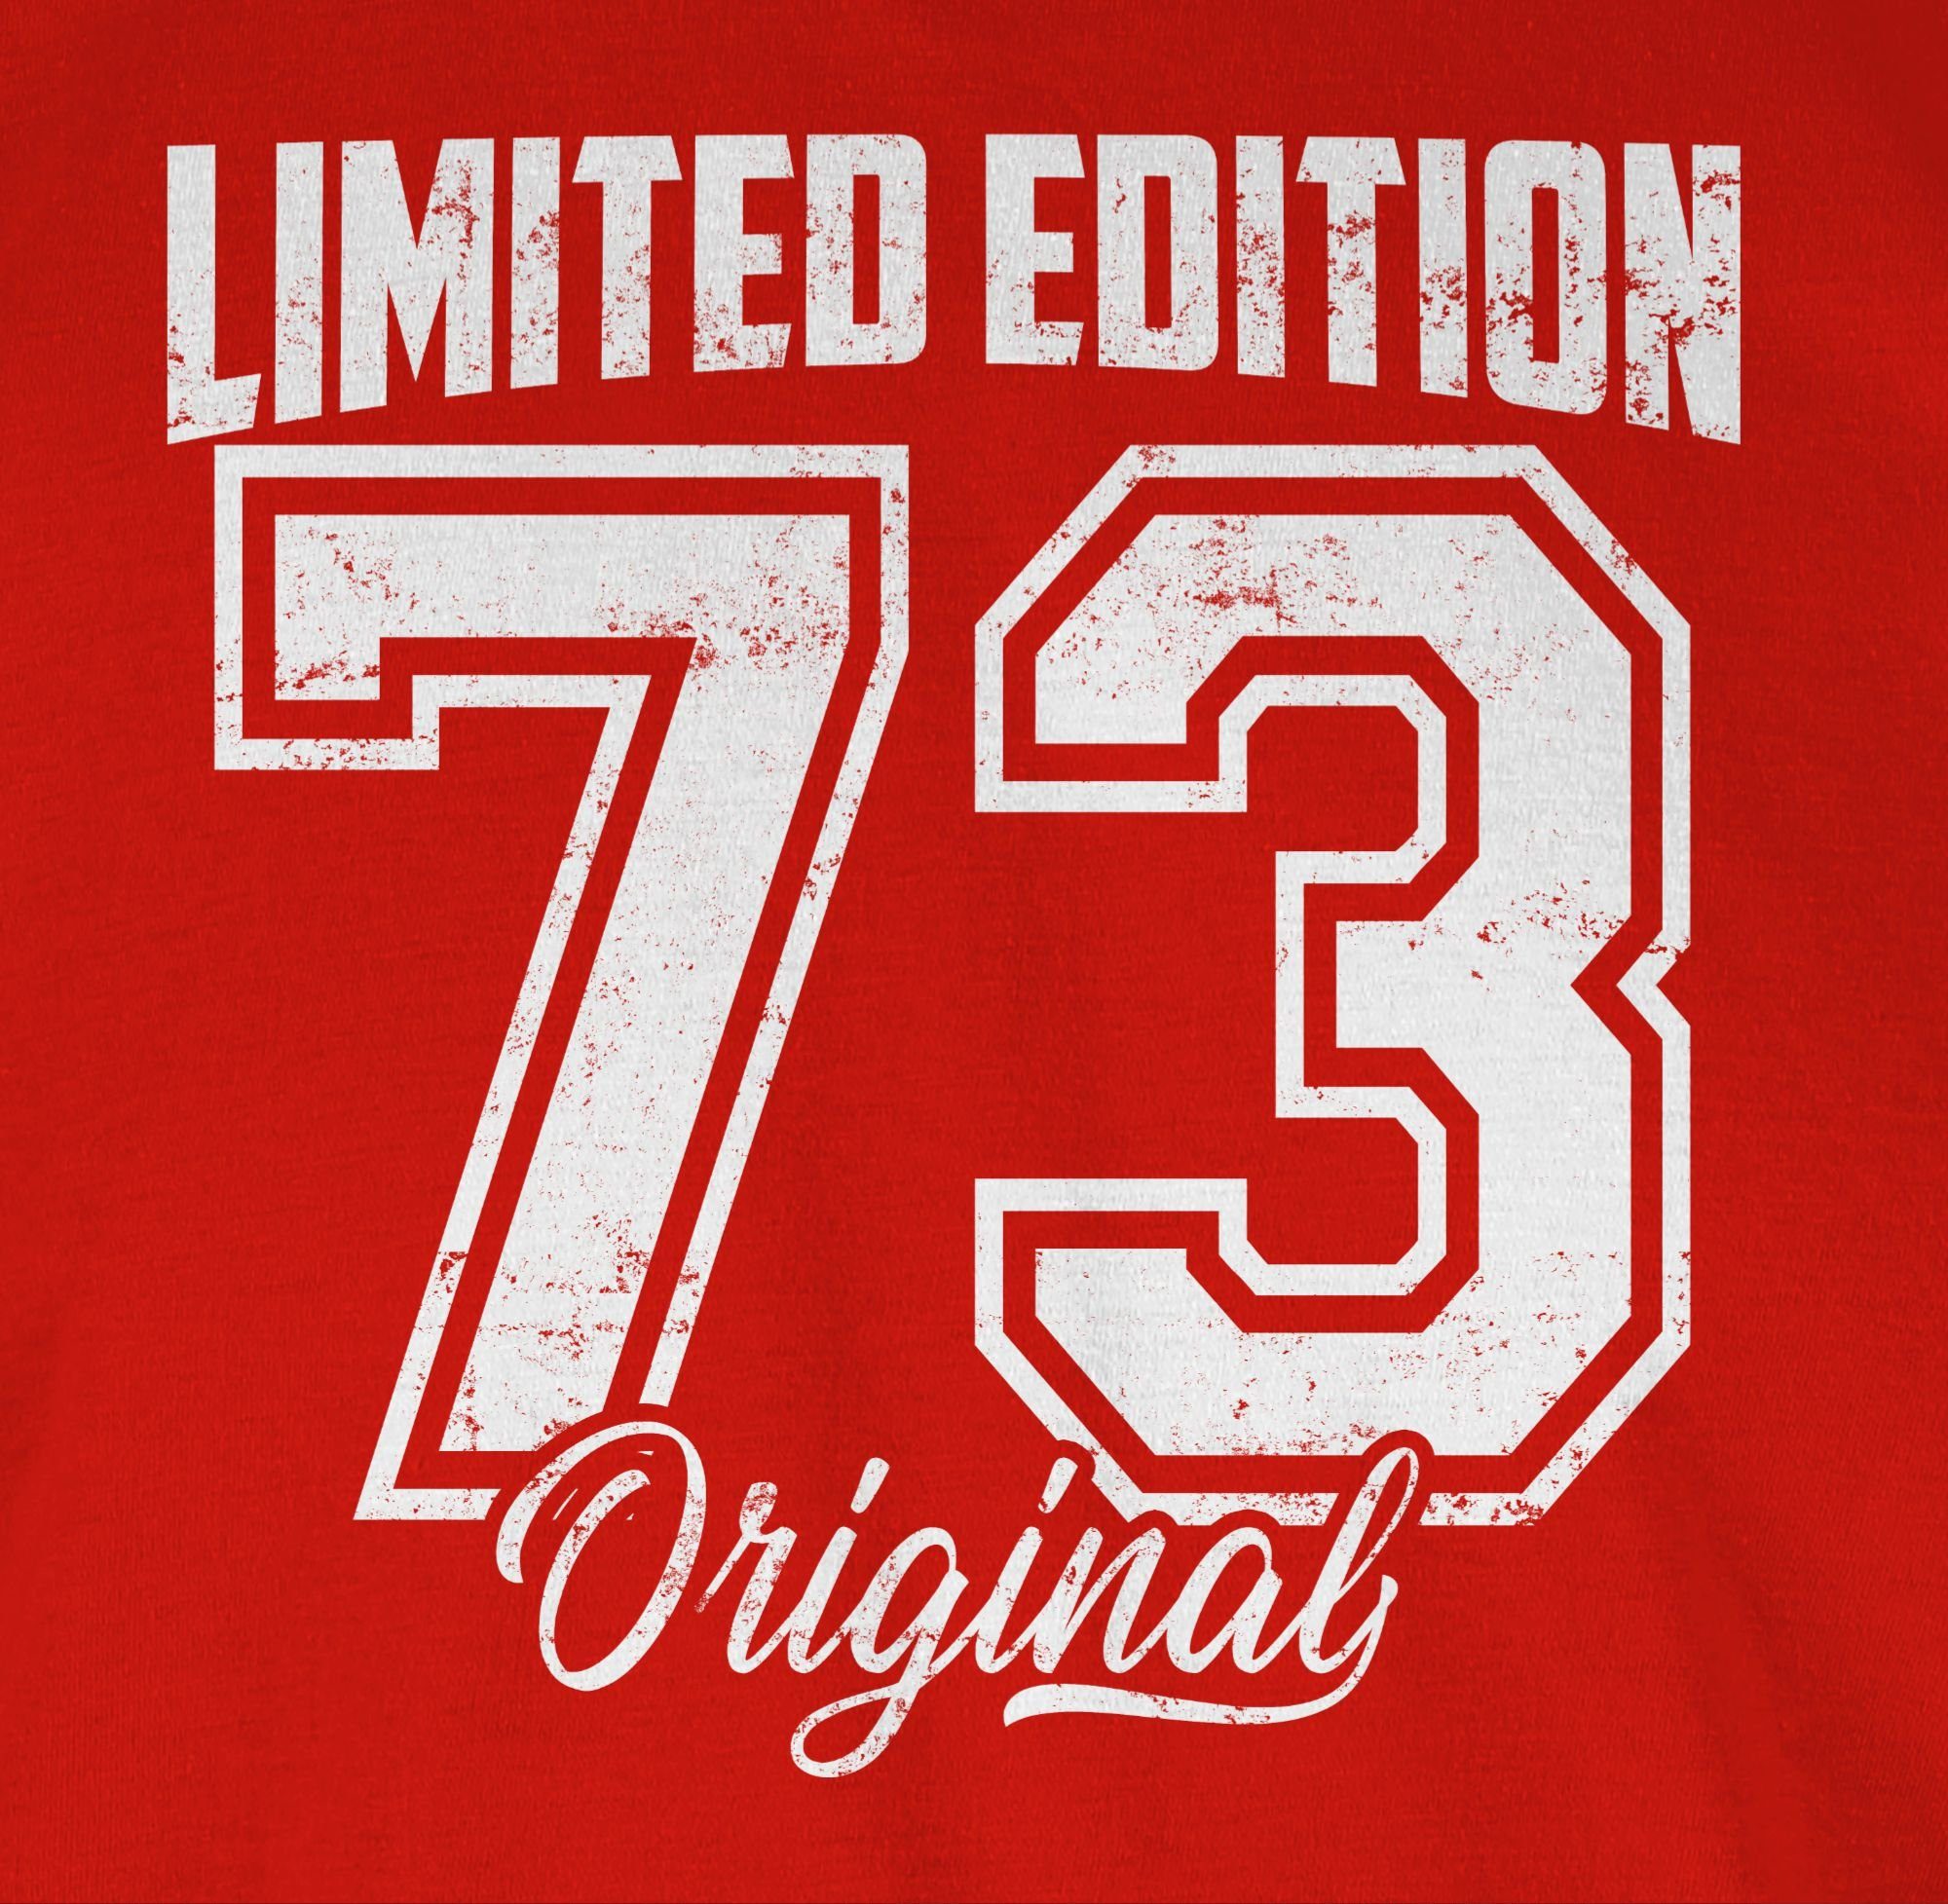 Geburtstag 1973 Shirtracer Weiß T-Shirt 50. Original Limited Rot Fünfzigster Edition Vintage 01